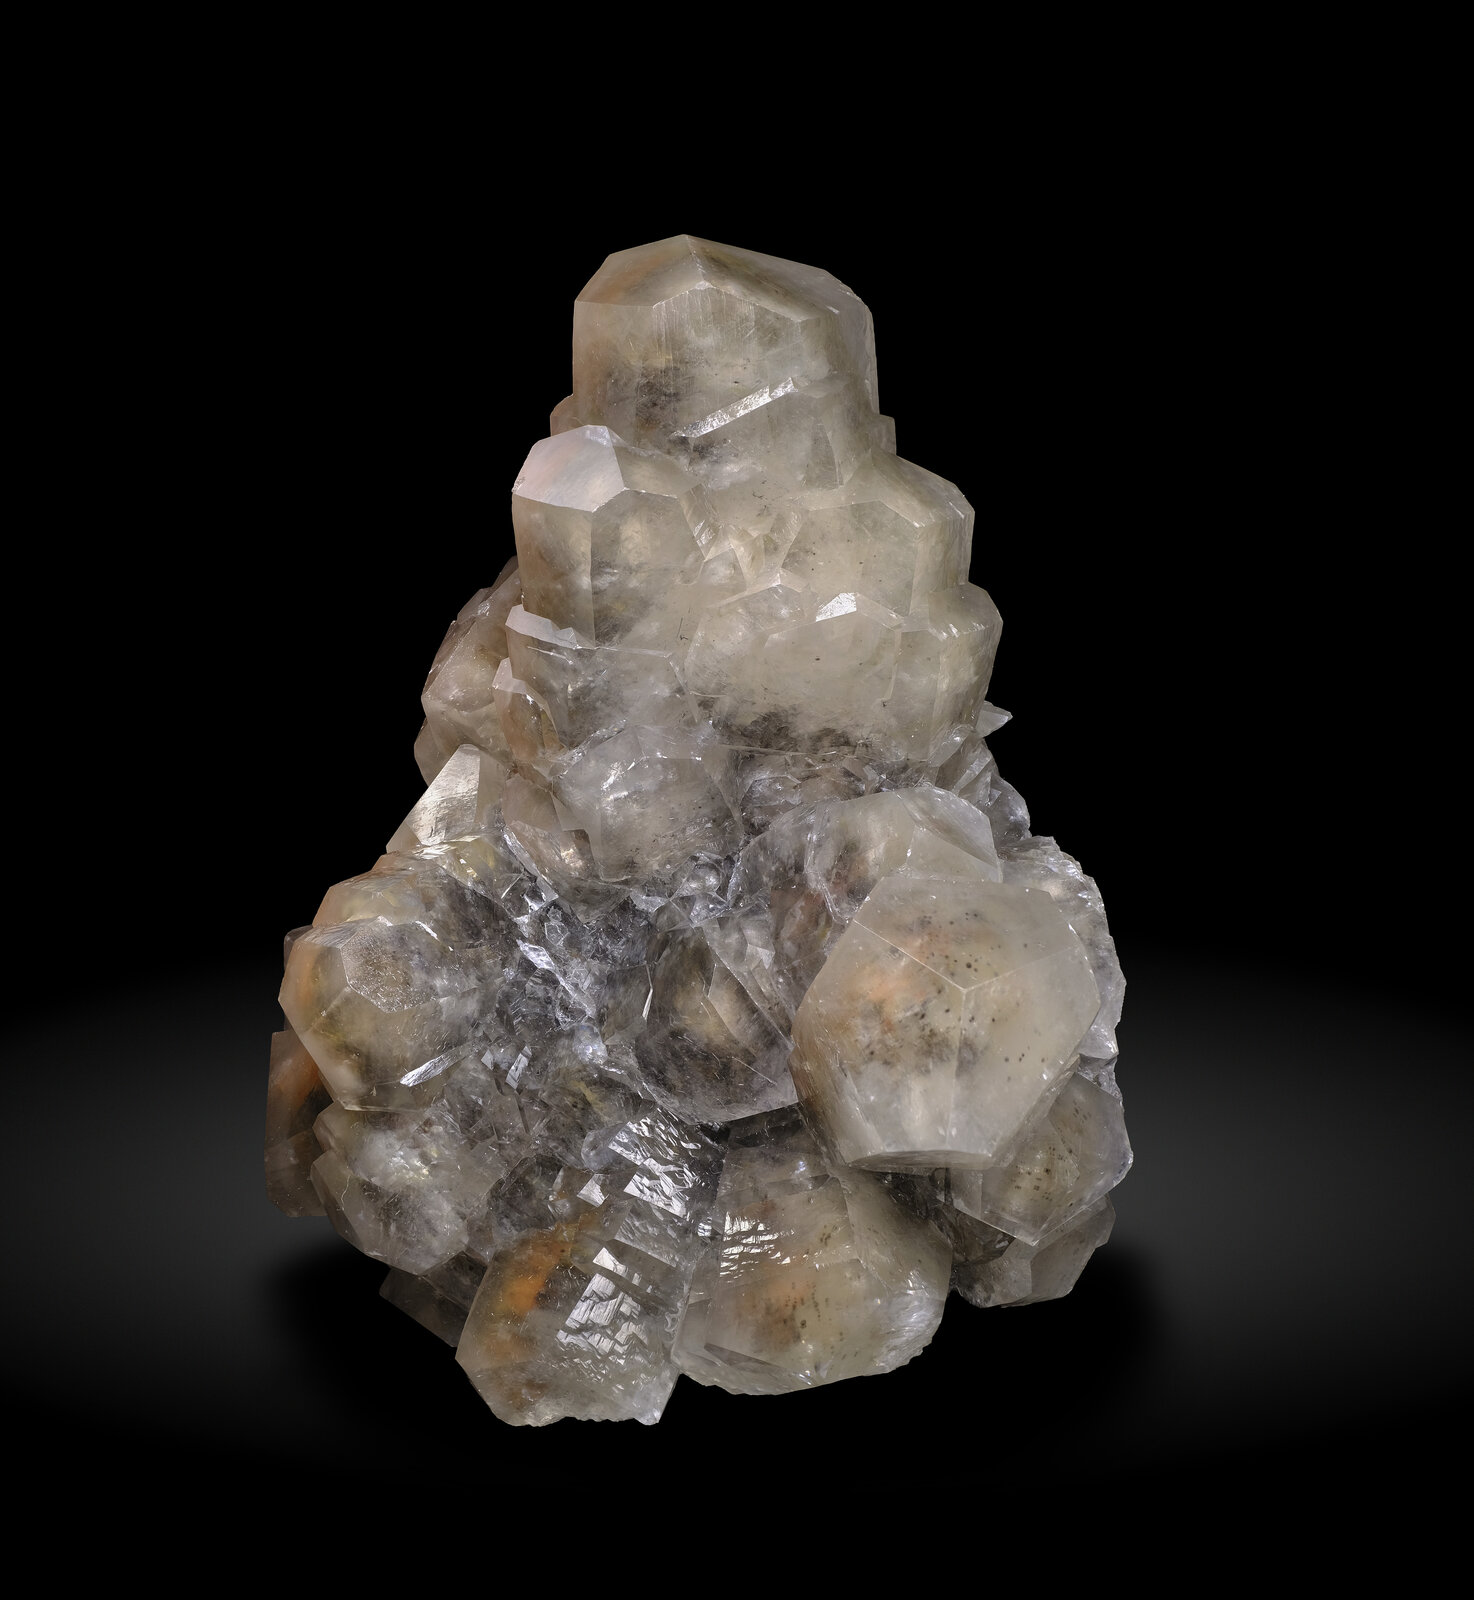 specimens/s_imagesAO5/Calcite-TFF67AO5-7792r.jpg